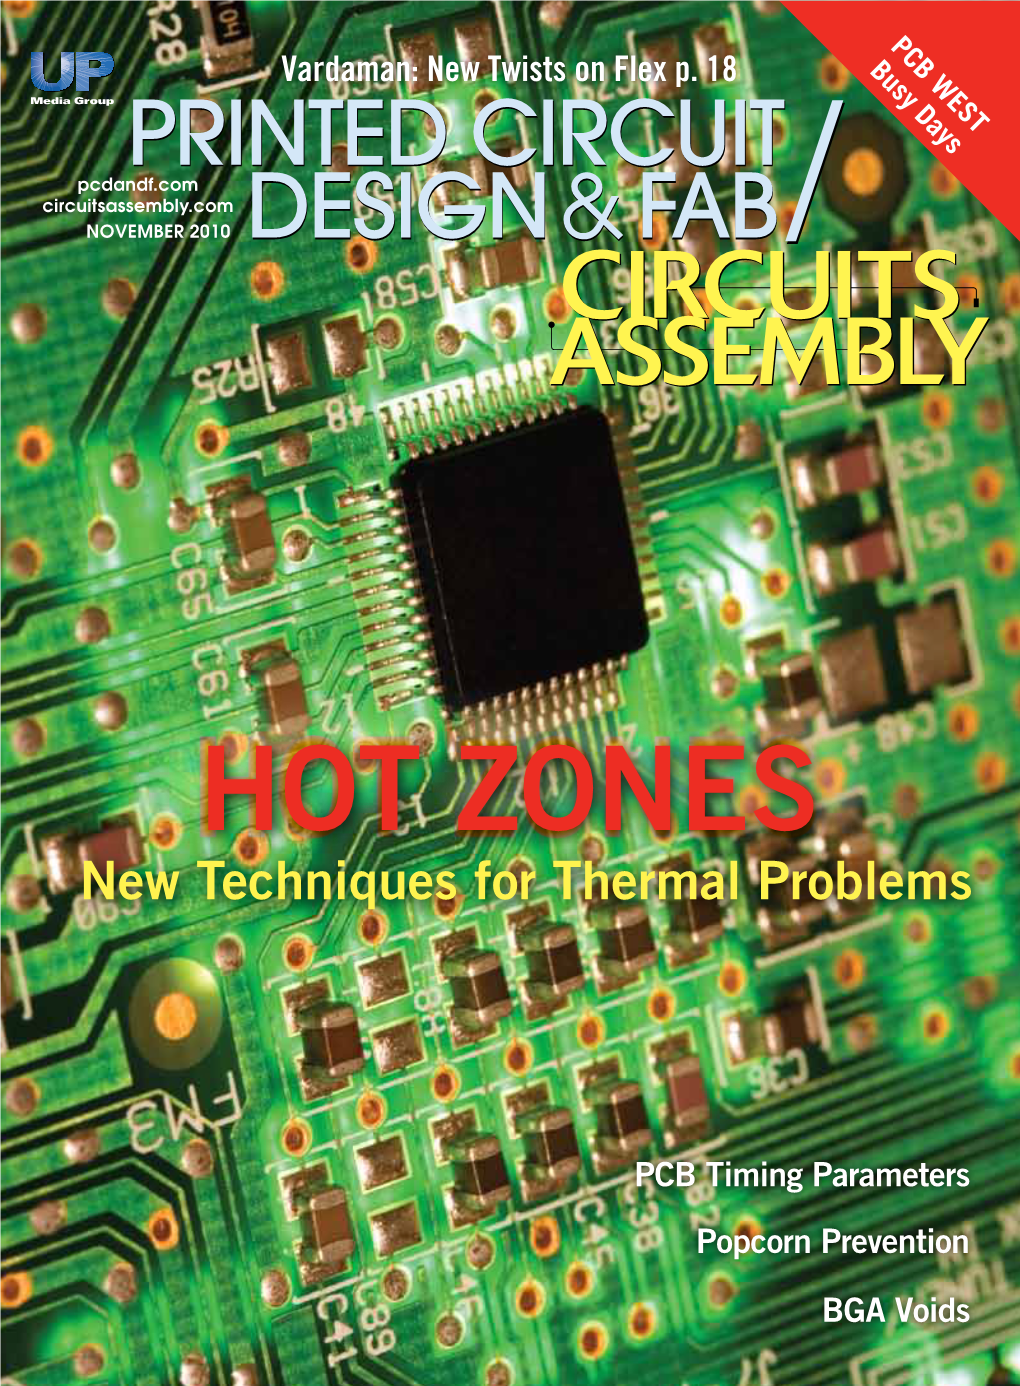 Printed Circuit Design & Fab/Circuits